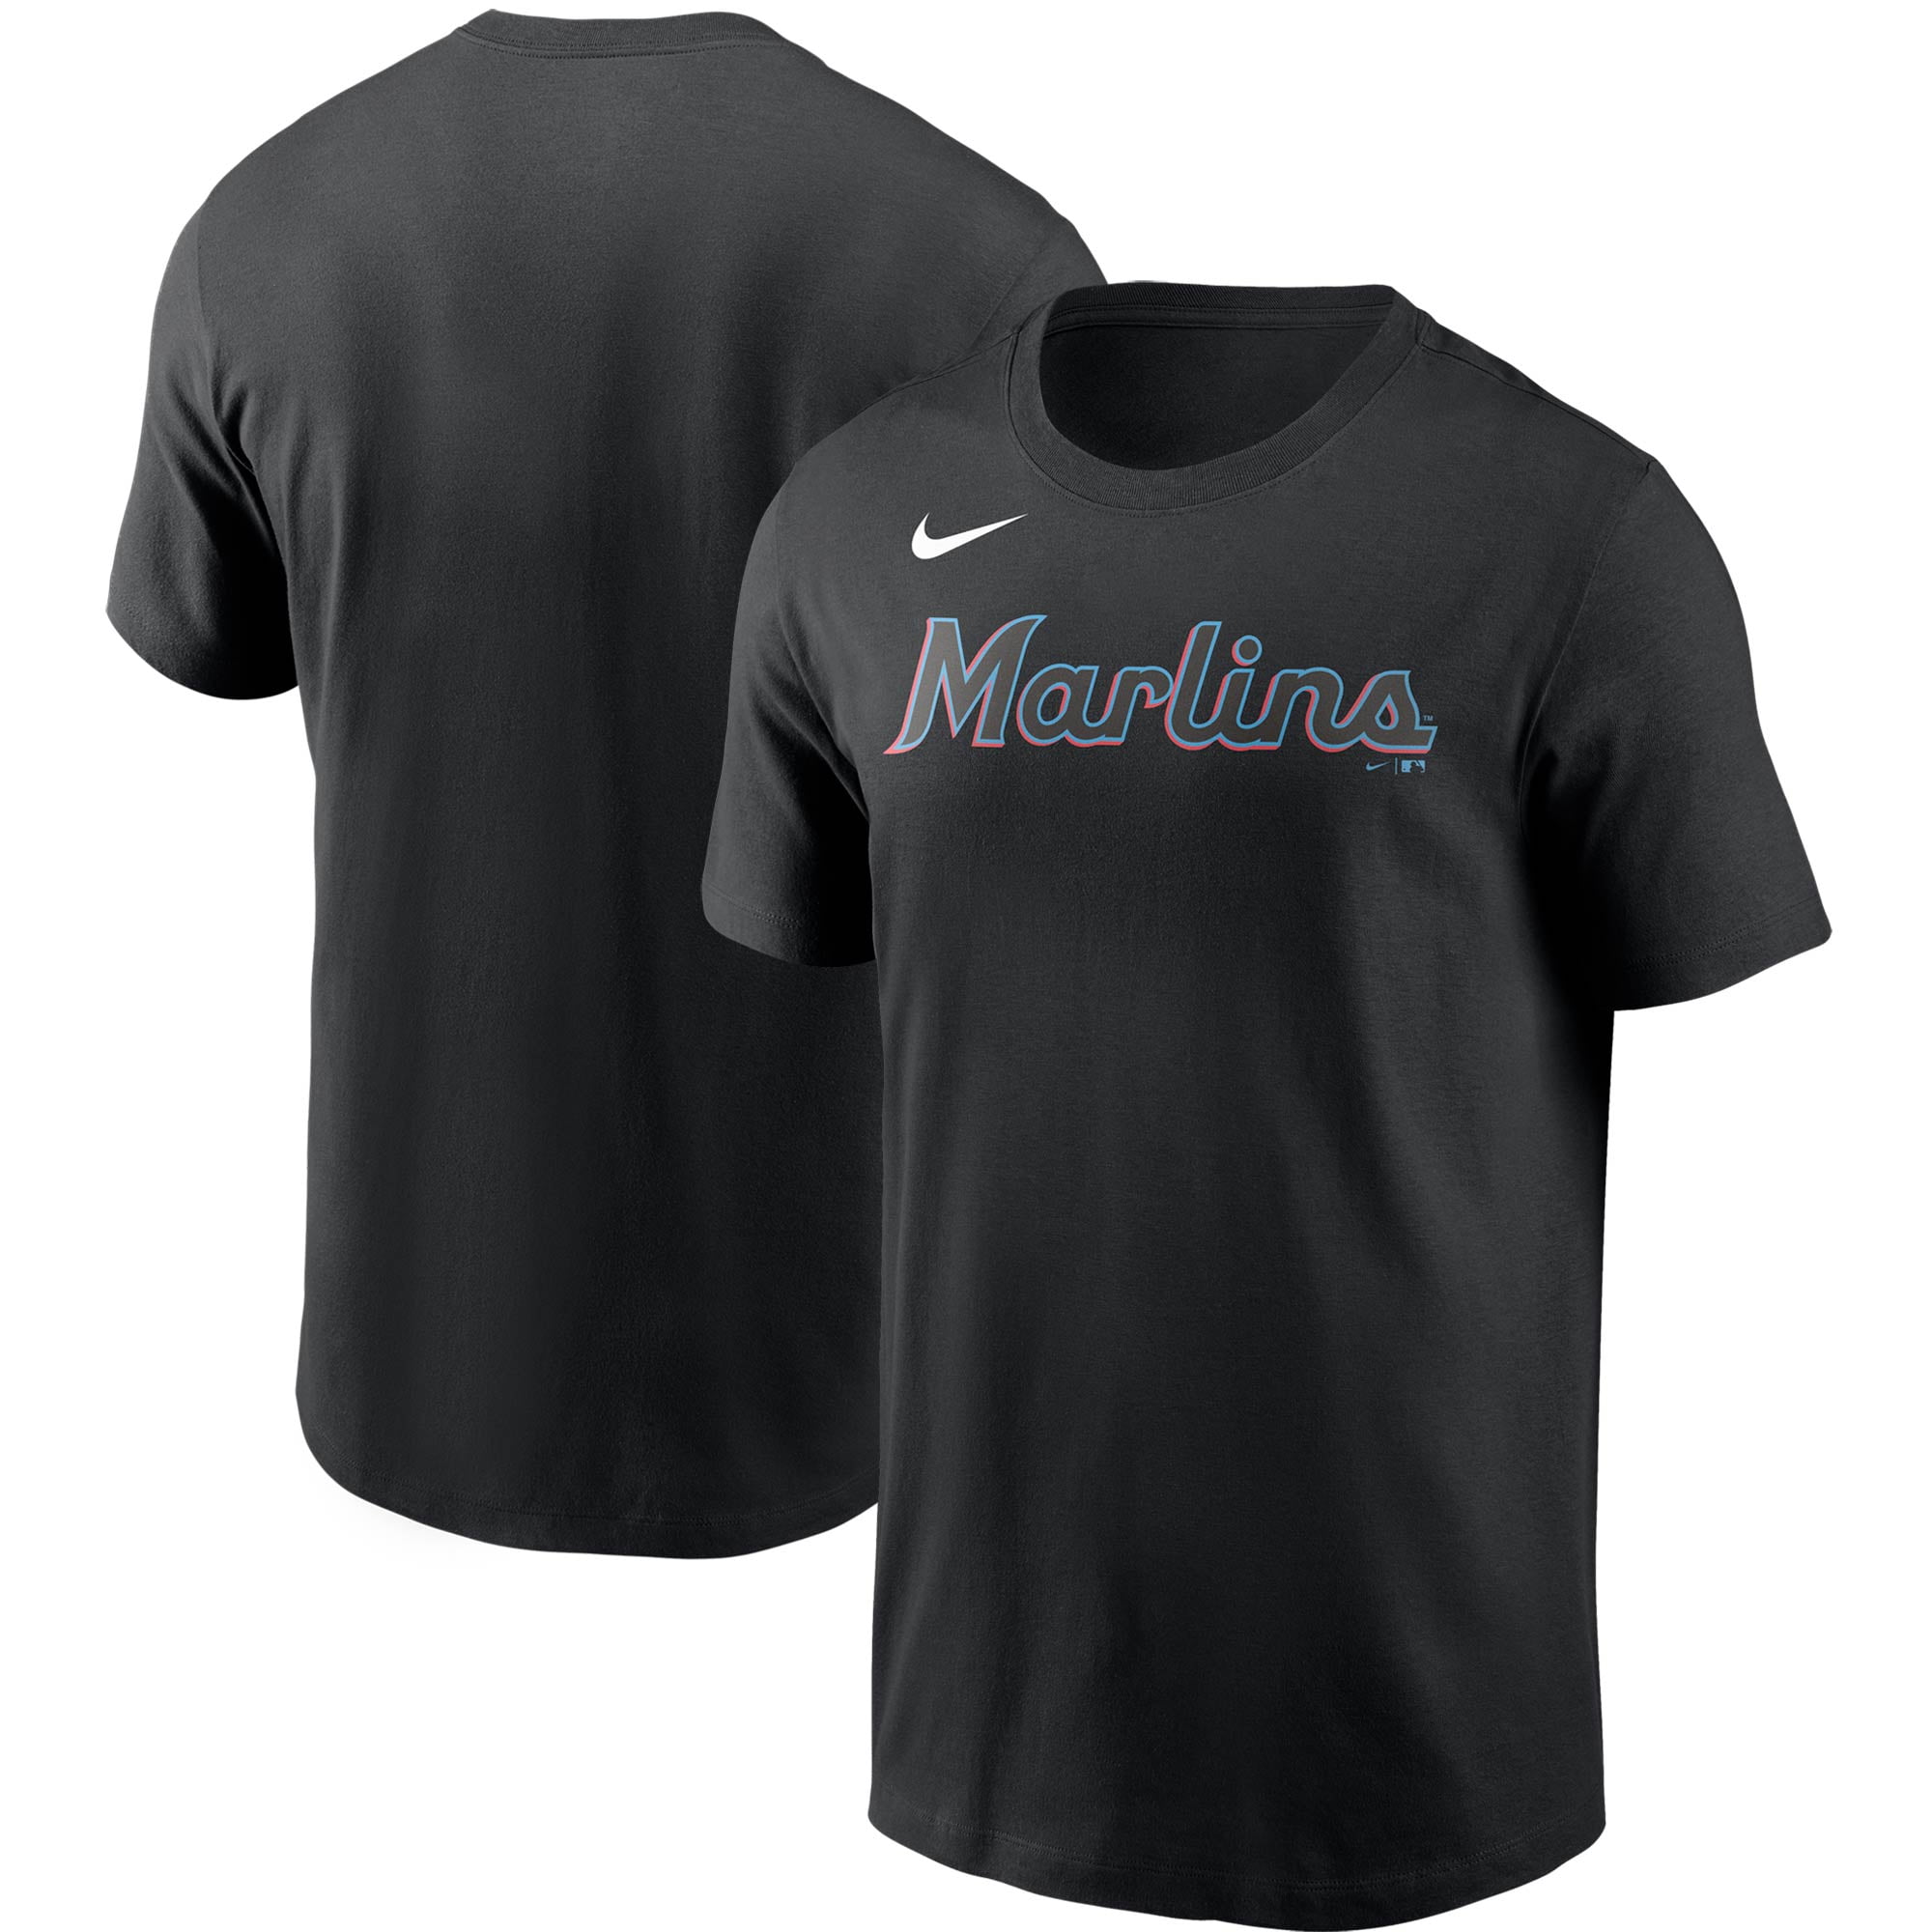 Marlins T-shirts